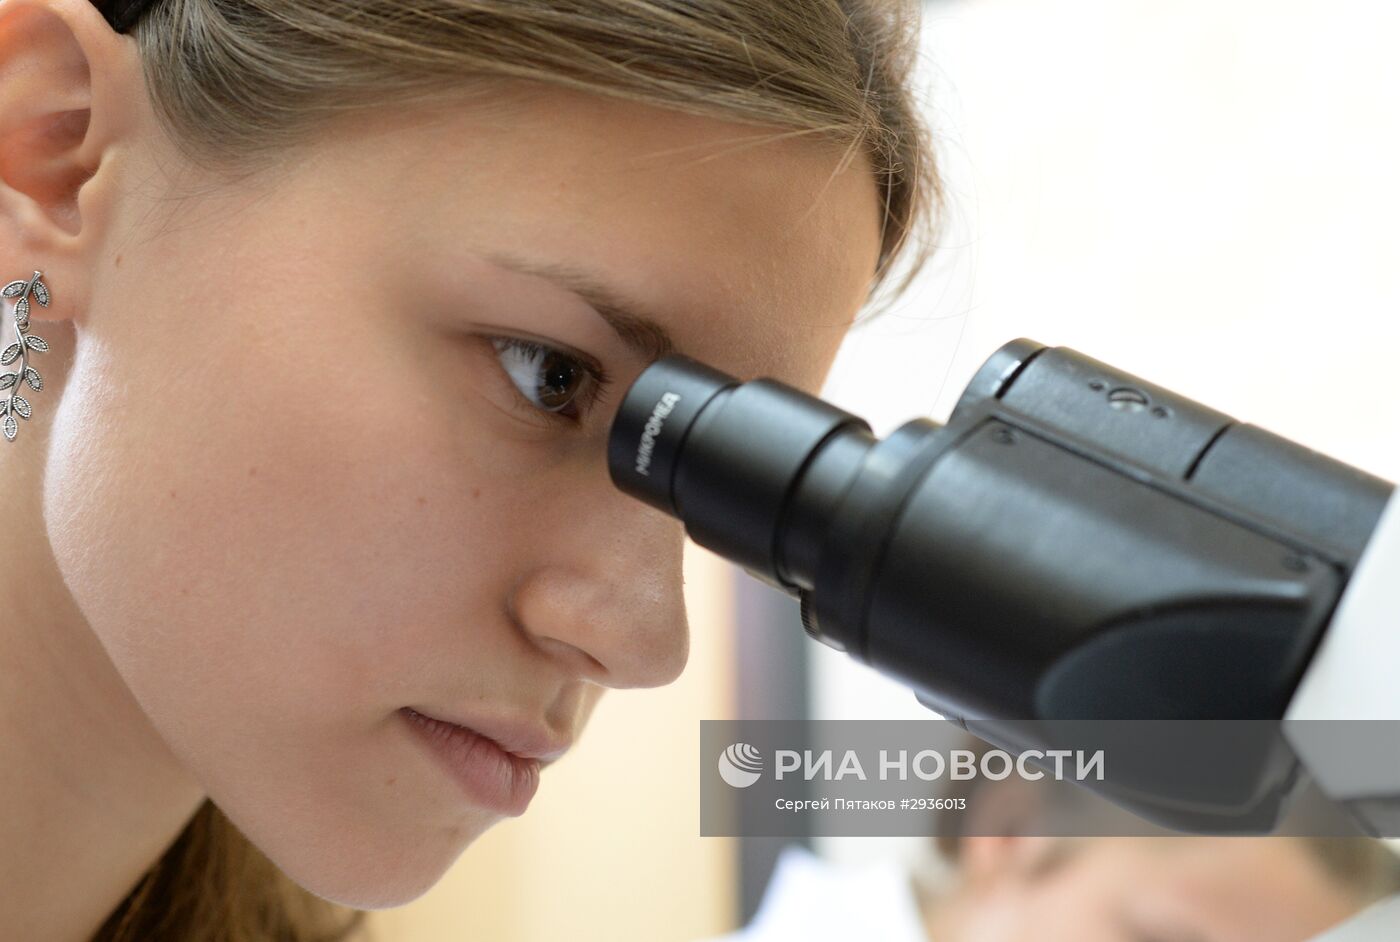 Медицинский класс в московской школе